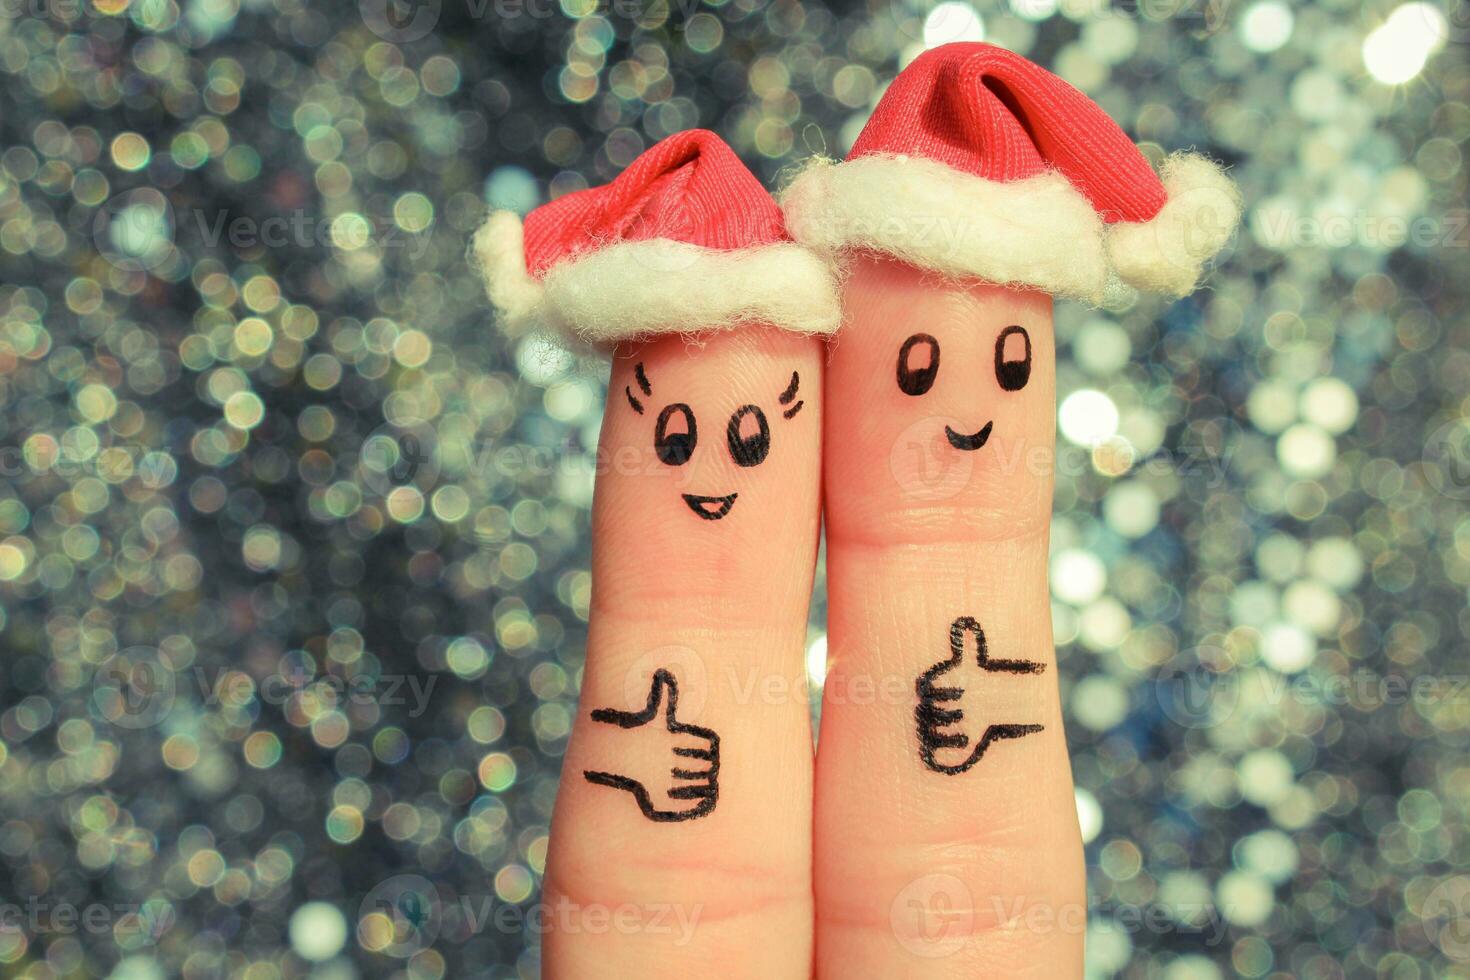 dito arte di coppia celebra Natale. concetto di uomo e donna ridendo nel nuovo anno cappelli. contento paio mostrando pollici su. tonica Immagine. foto